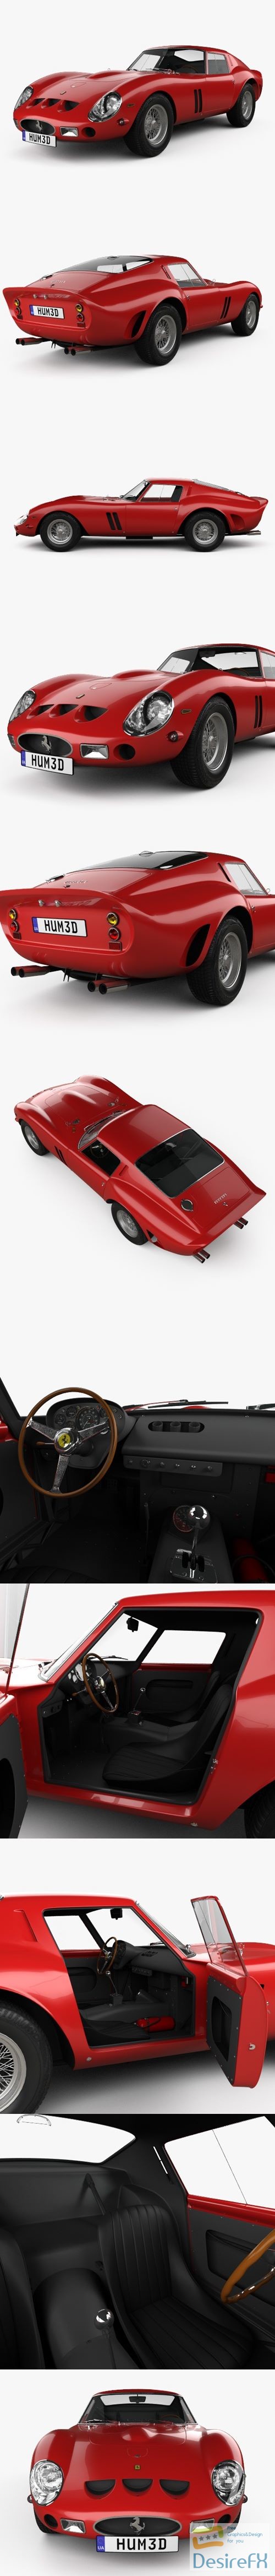 Ferrari 250 GTO (Series I) with HQ interior 1962 3D Model